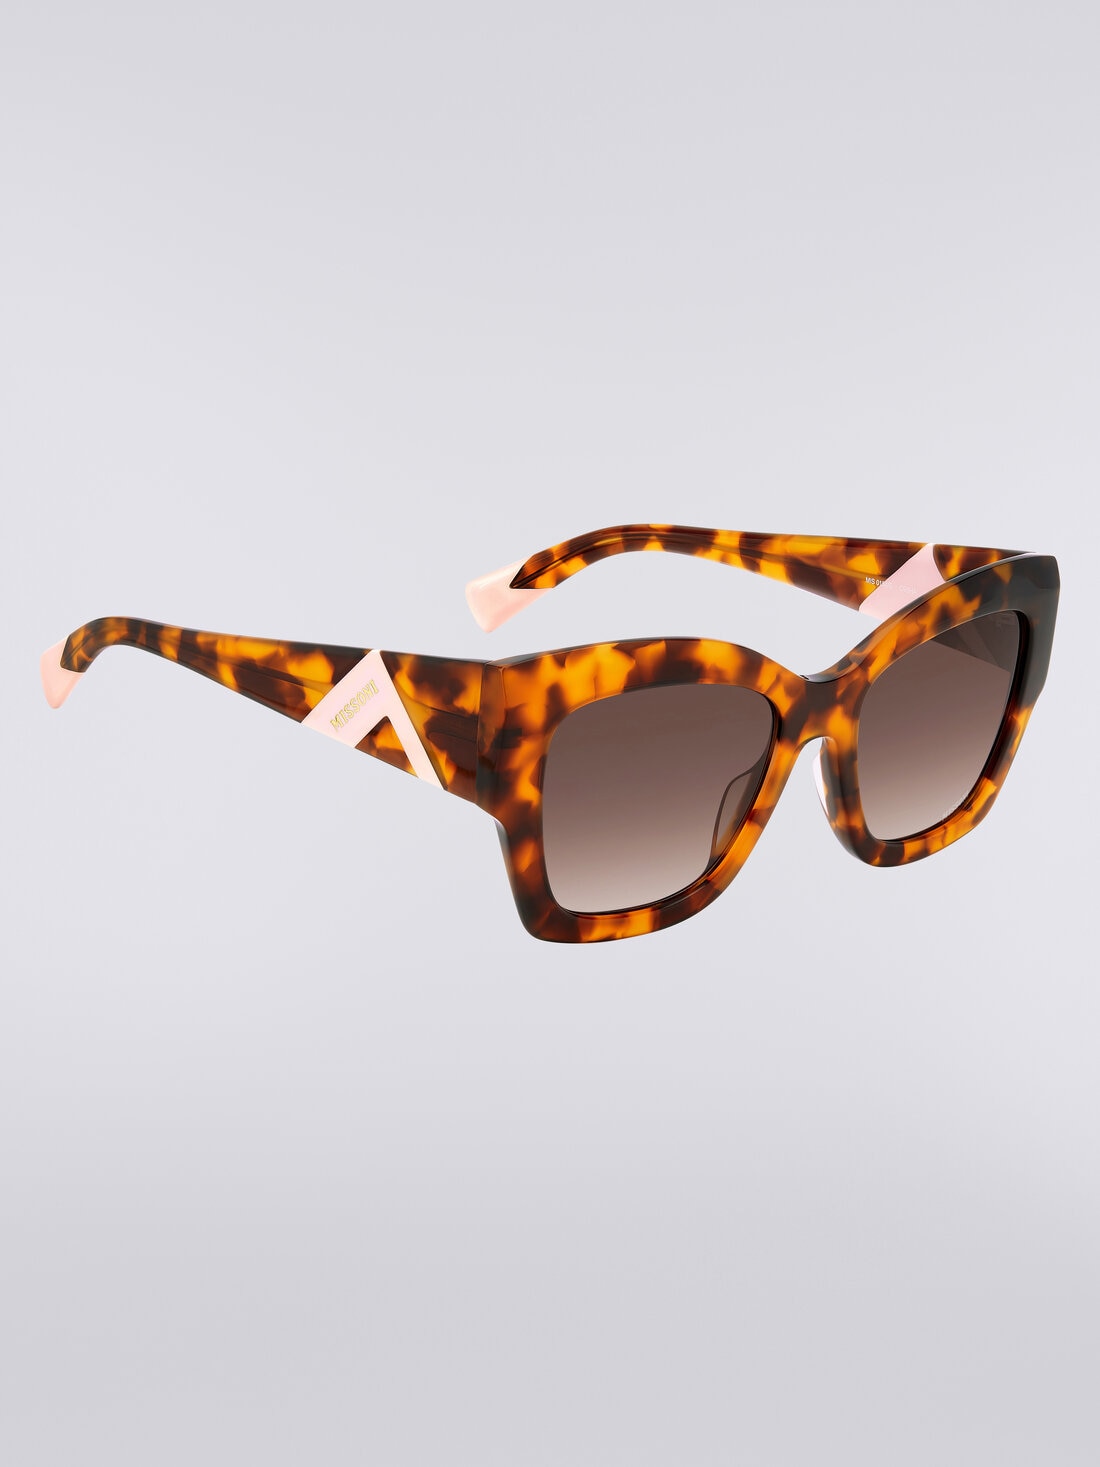 Gafas de sol extragrandes de mariposa, Multicolor  - 8053147115443 - 2